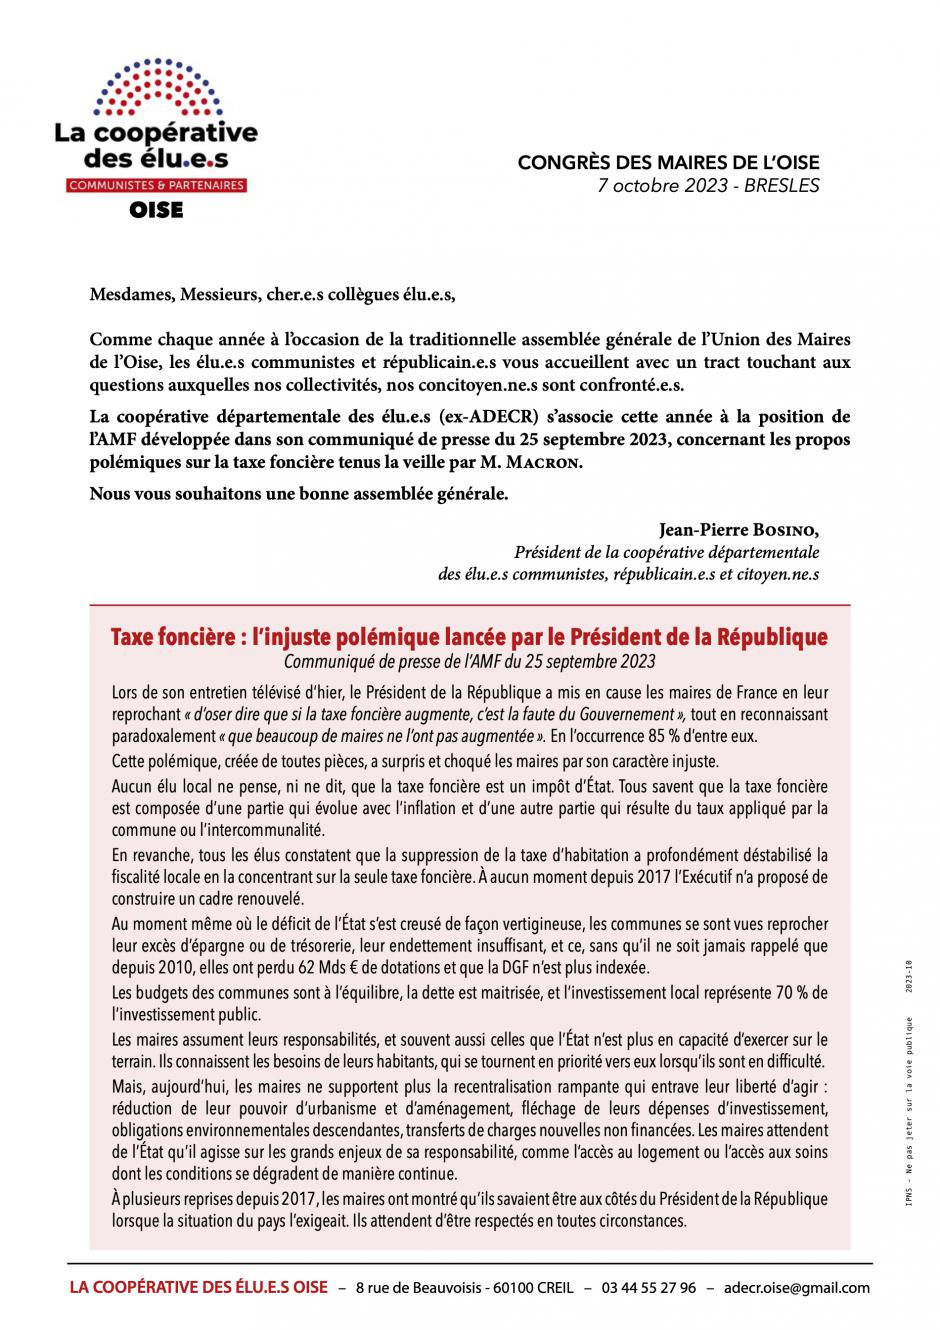 Tract distribué à l'occasion du congrès de l'Union des Maires de l'Oise - Coopérative des élu·e·s Oise, 7 octobre 2023